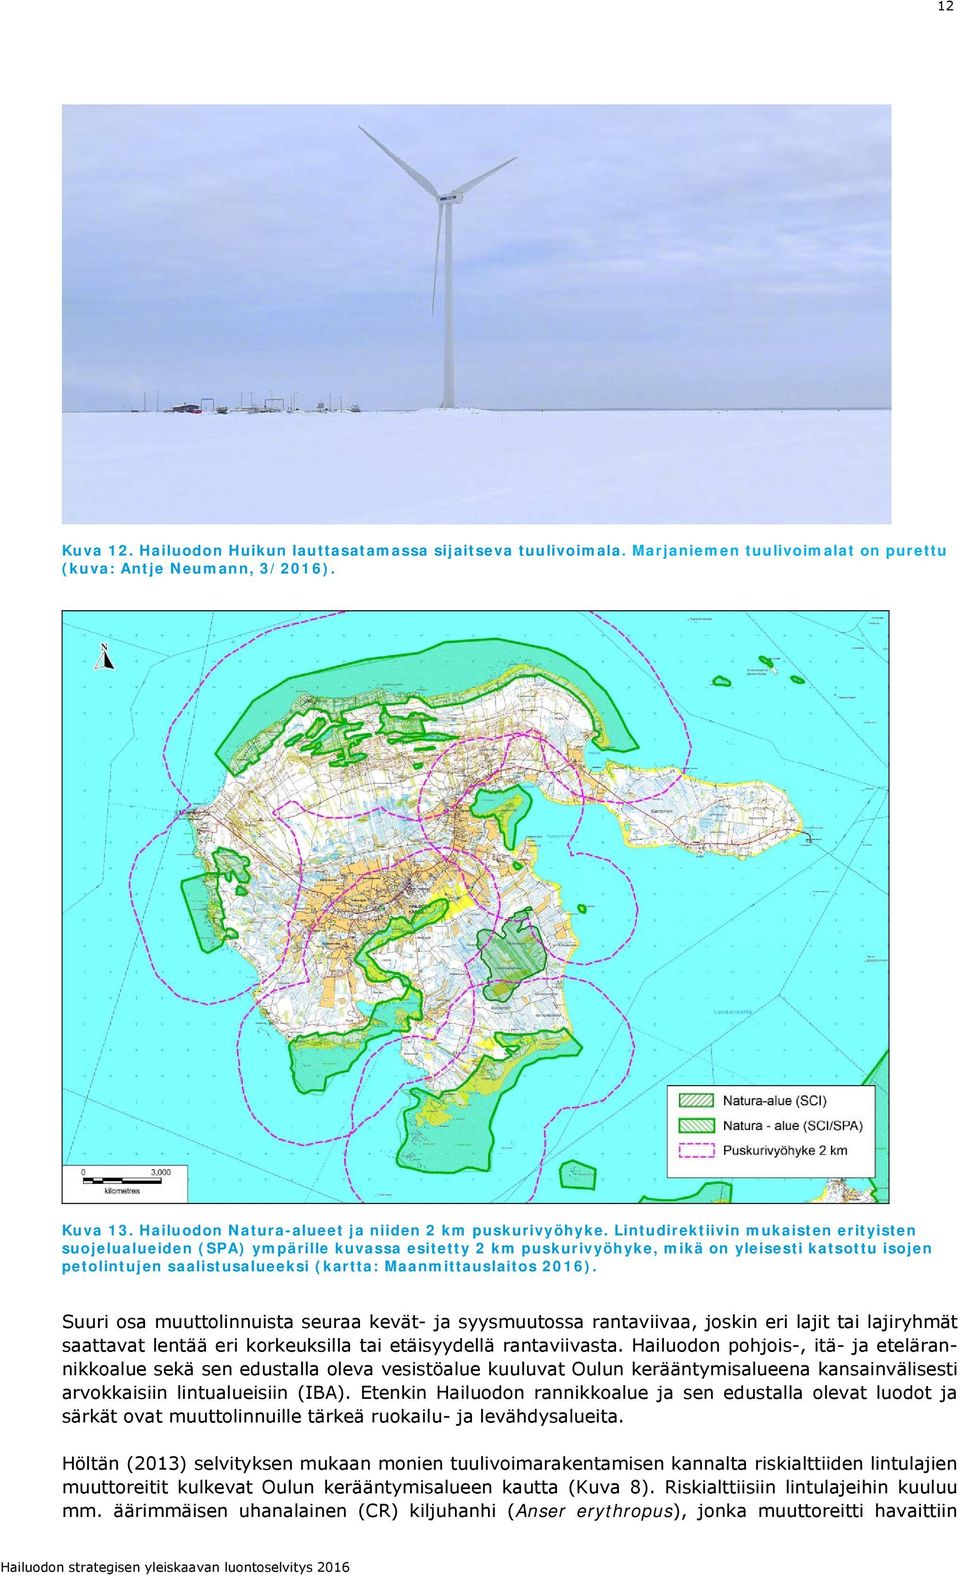 Lintudirektiivin mukaisten erityisten suojelualueiden (SPA) ympärille kuvassa esitetty 2 km puskurivyöhyke, mikä on yleisesti katsottu isojen petolintujen saalistusalueeksi (kartta: Maanmittauslaitos